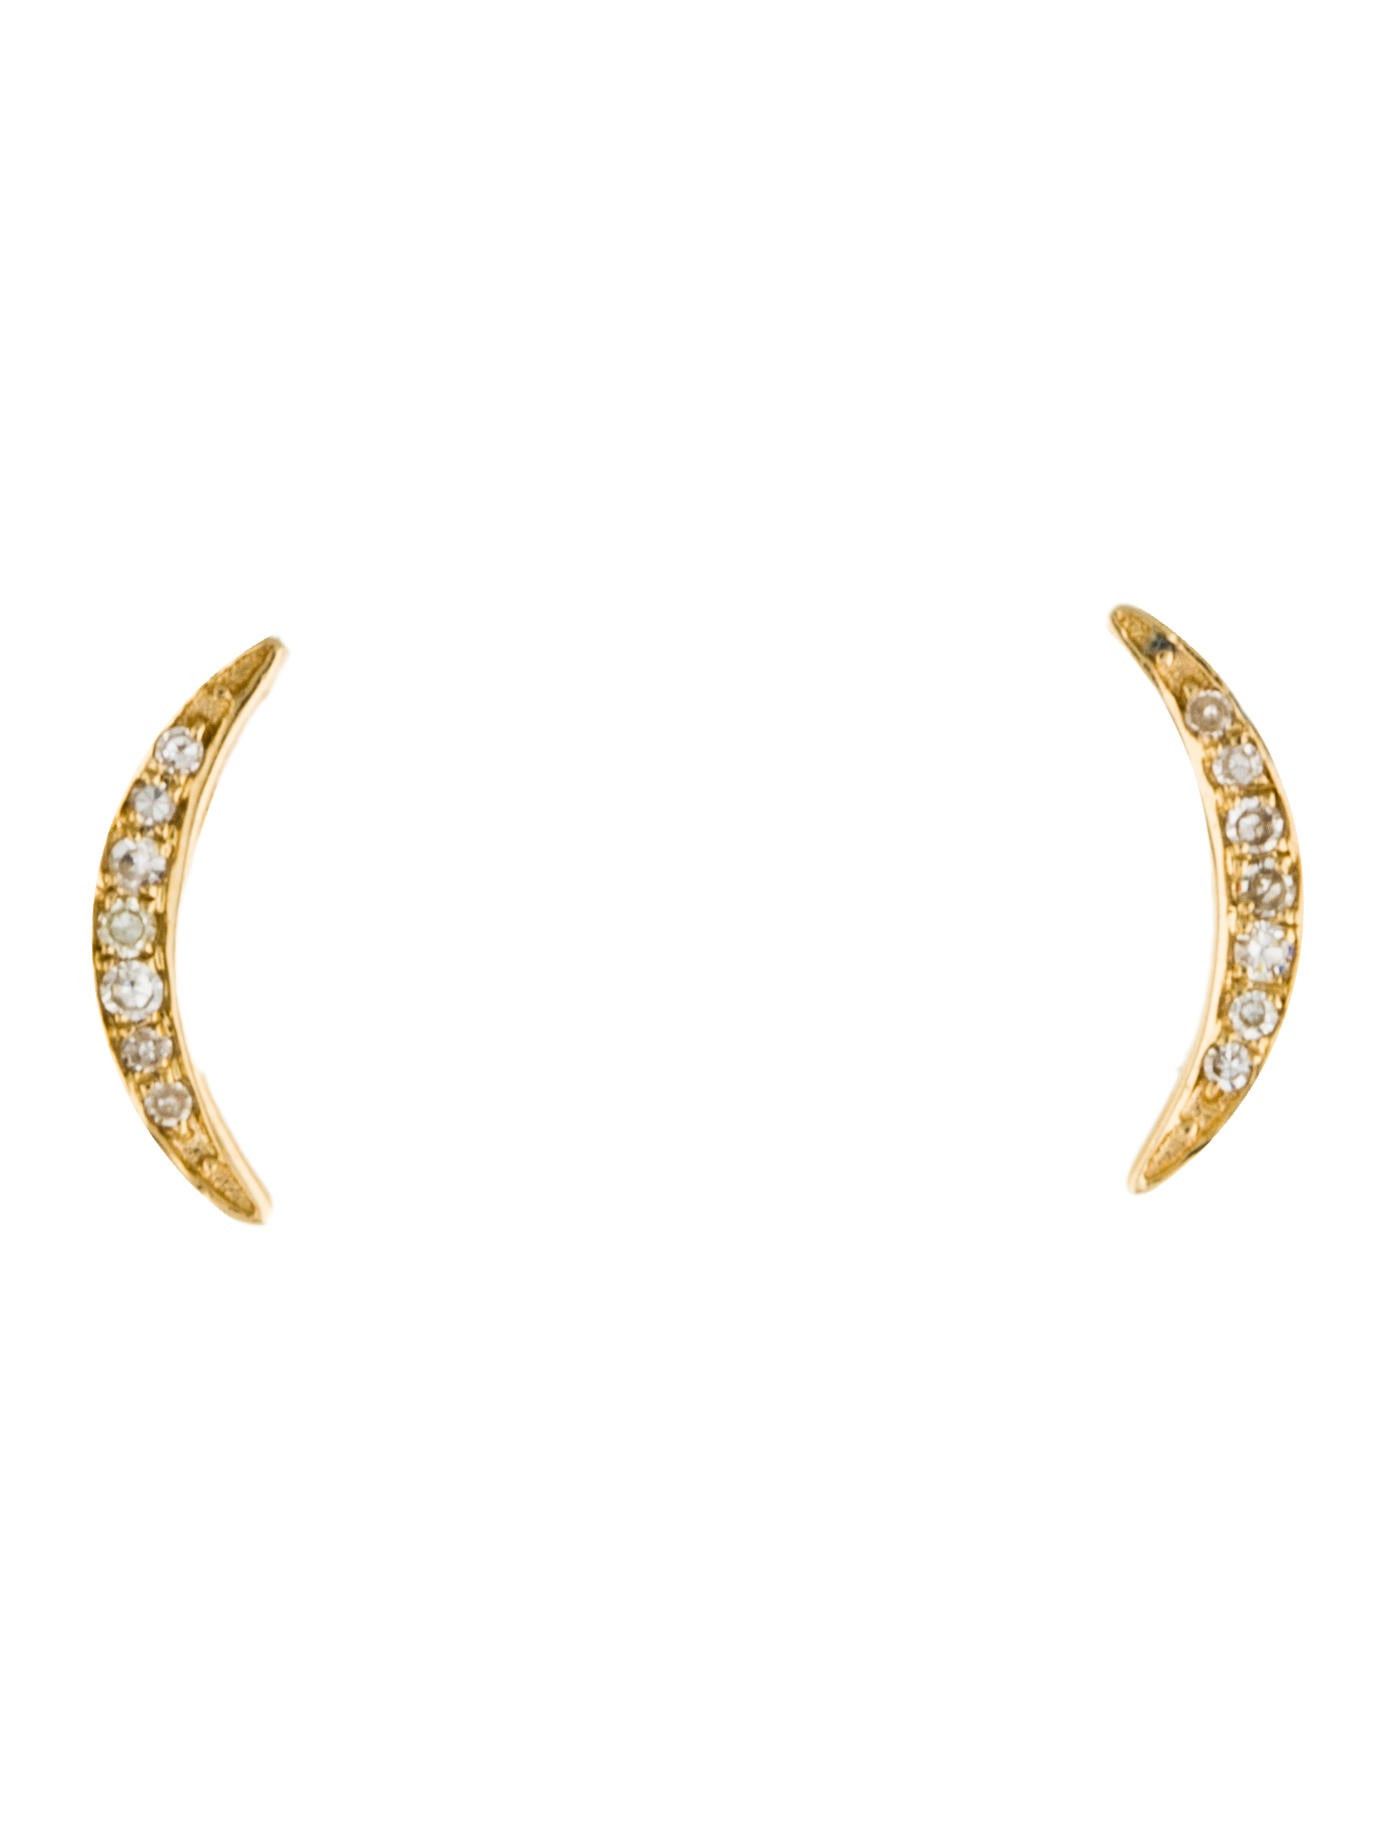 Crescent Moon Earrings
 Earrings 14K Diamond Crescent Moon Stud Earrings